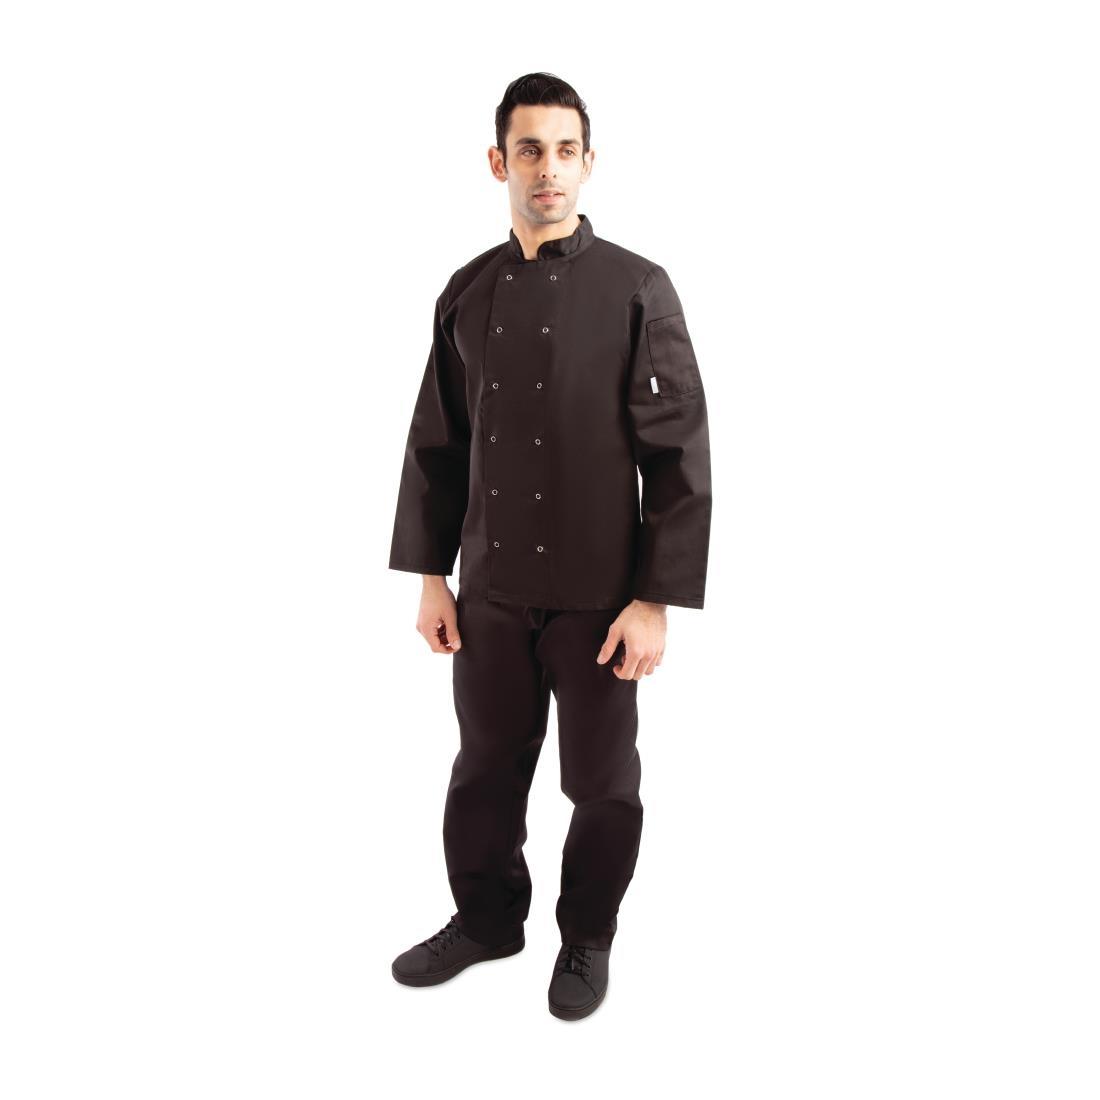 Whites Vegas Unisex Chefs Jacket Long Sleeve Black M - A438-M  - 7